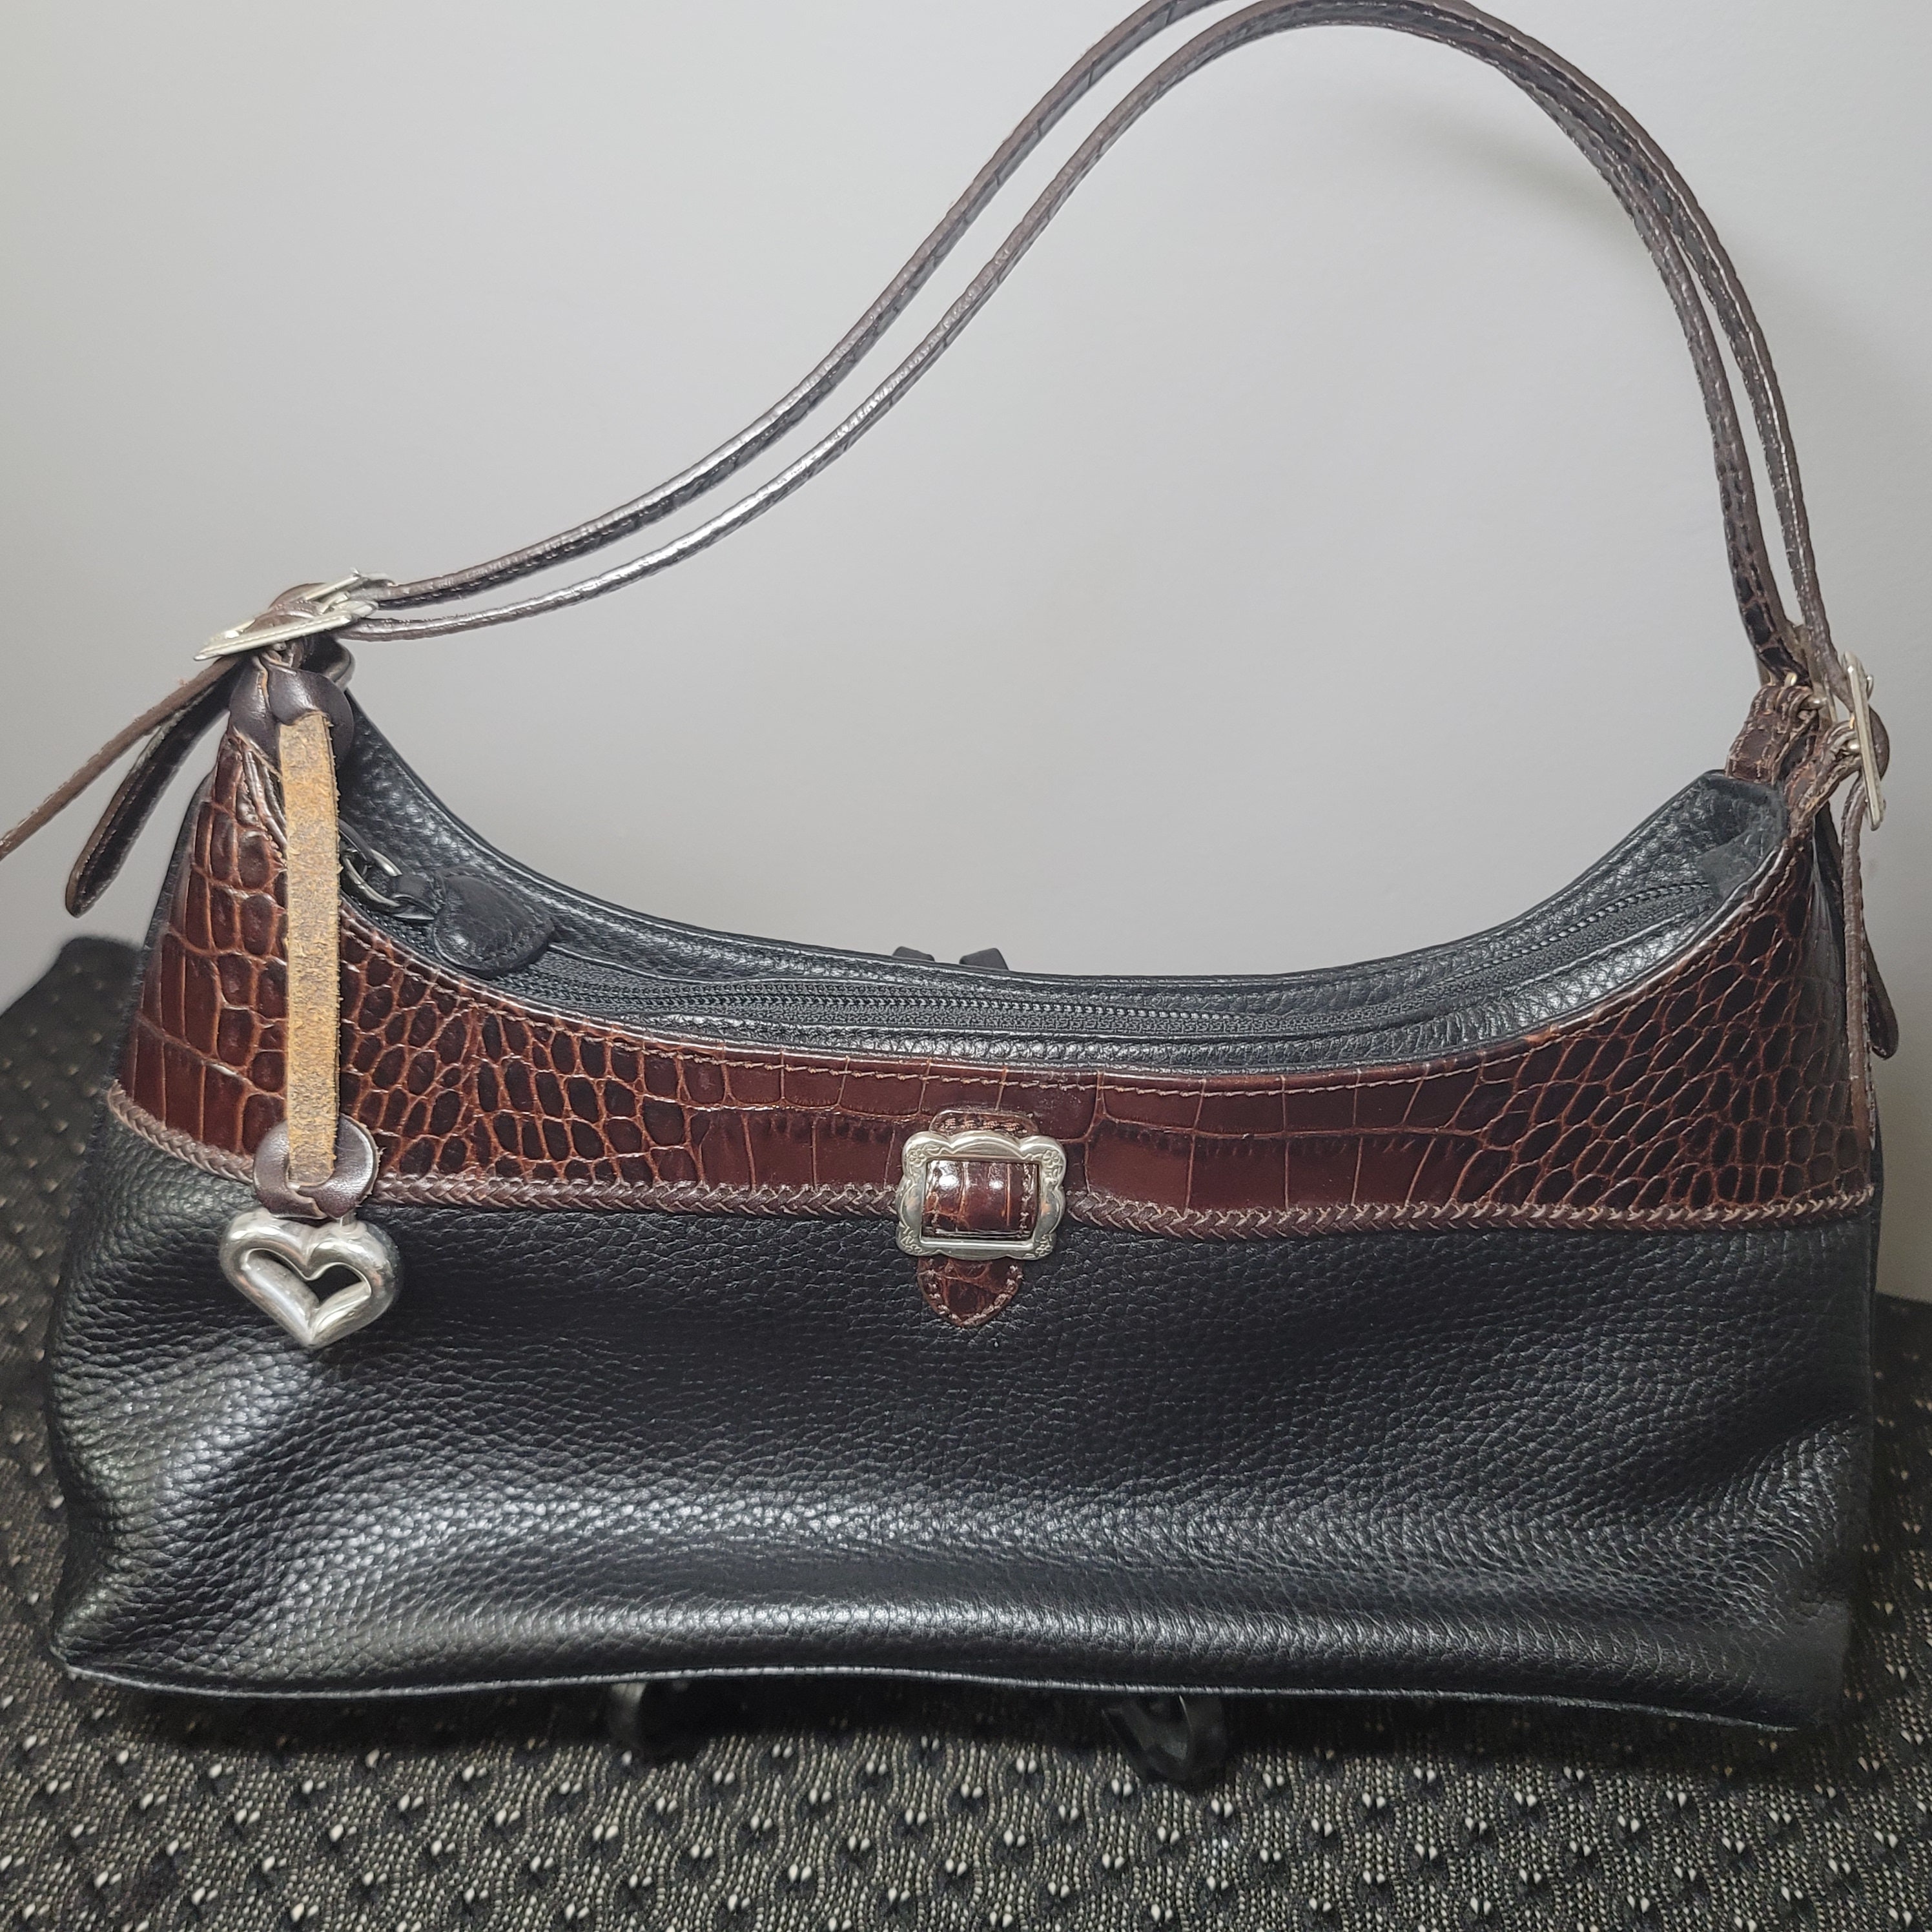 Adorable brighton purse for sale  